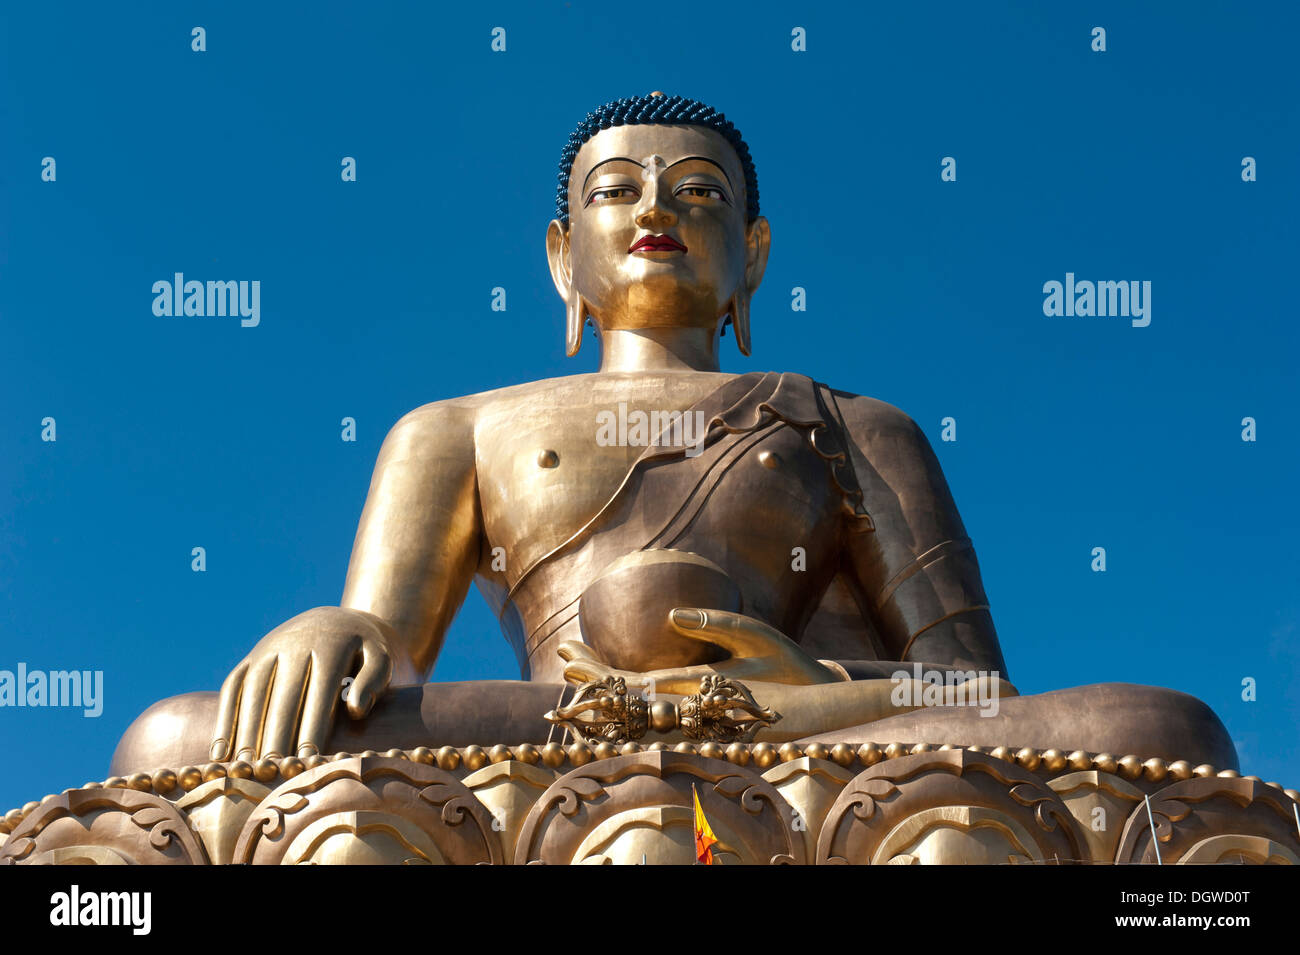 Le bouddhisme tibétain, la statue du Grand Bouddha, Big Buddha statue en bronze, Thimphu, l'Himalaya, le Royaume du Bhoutan, l'Asie du Sud, Asie Banque D'Images